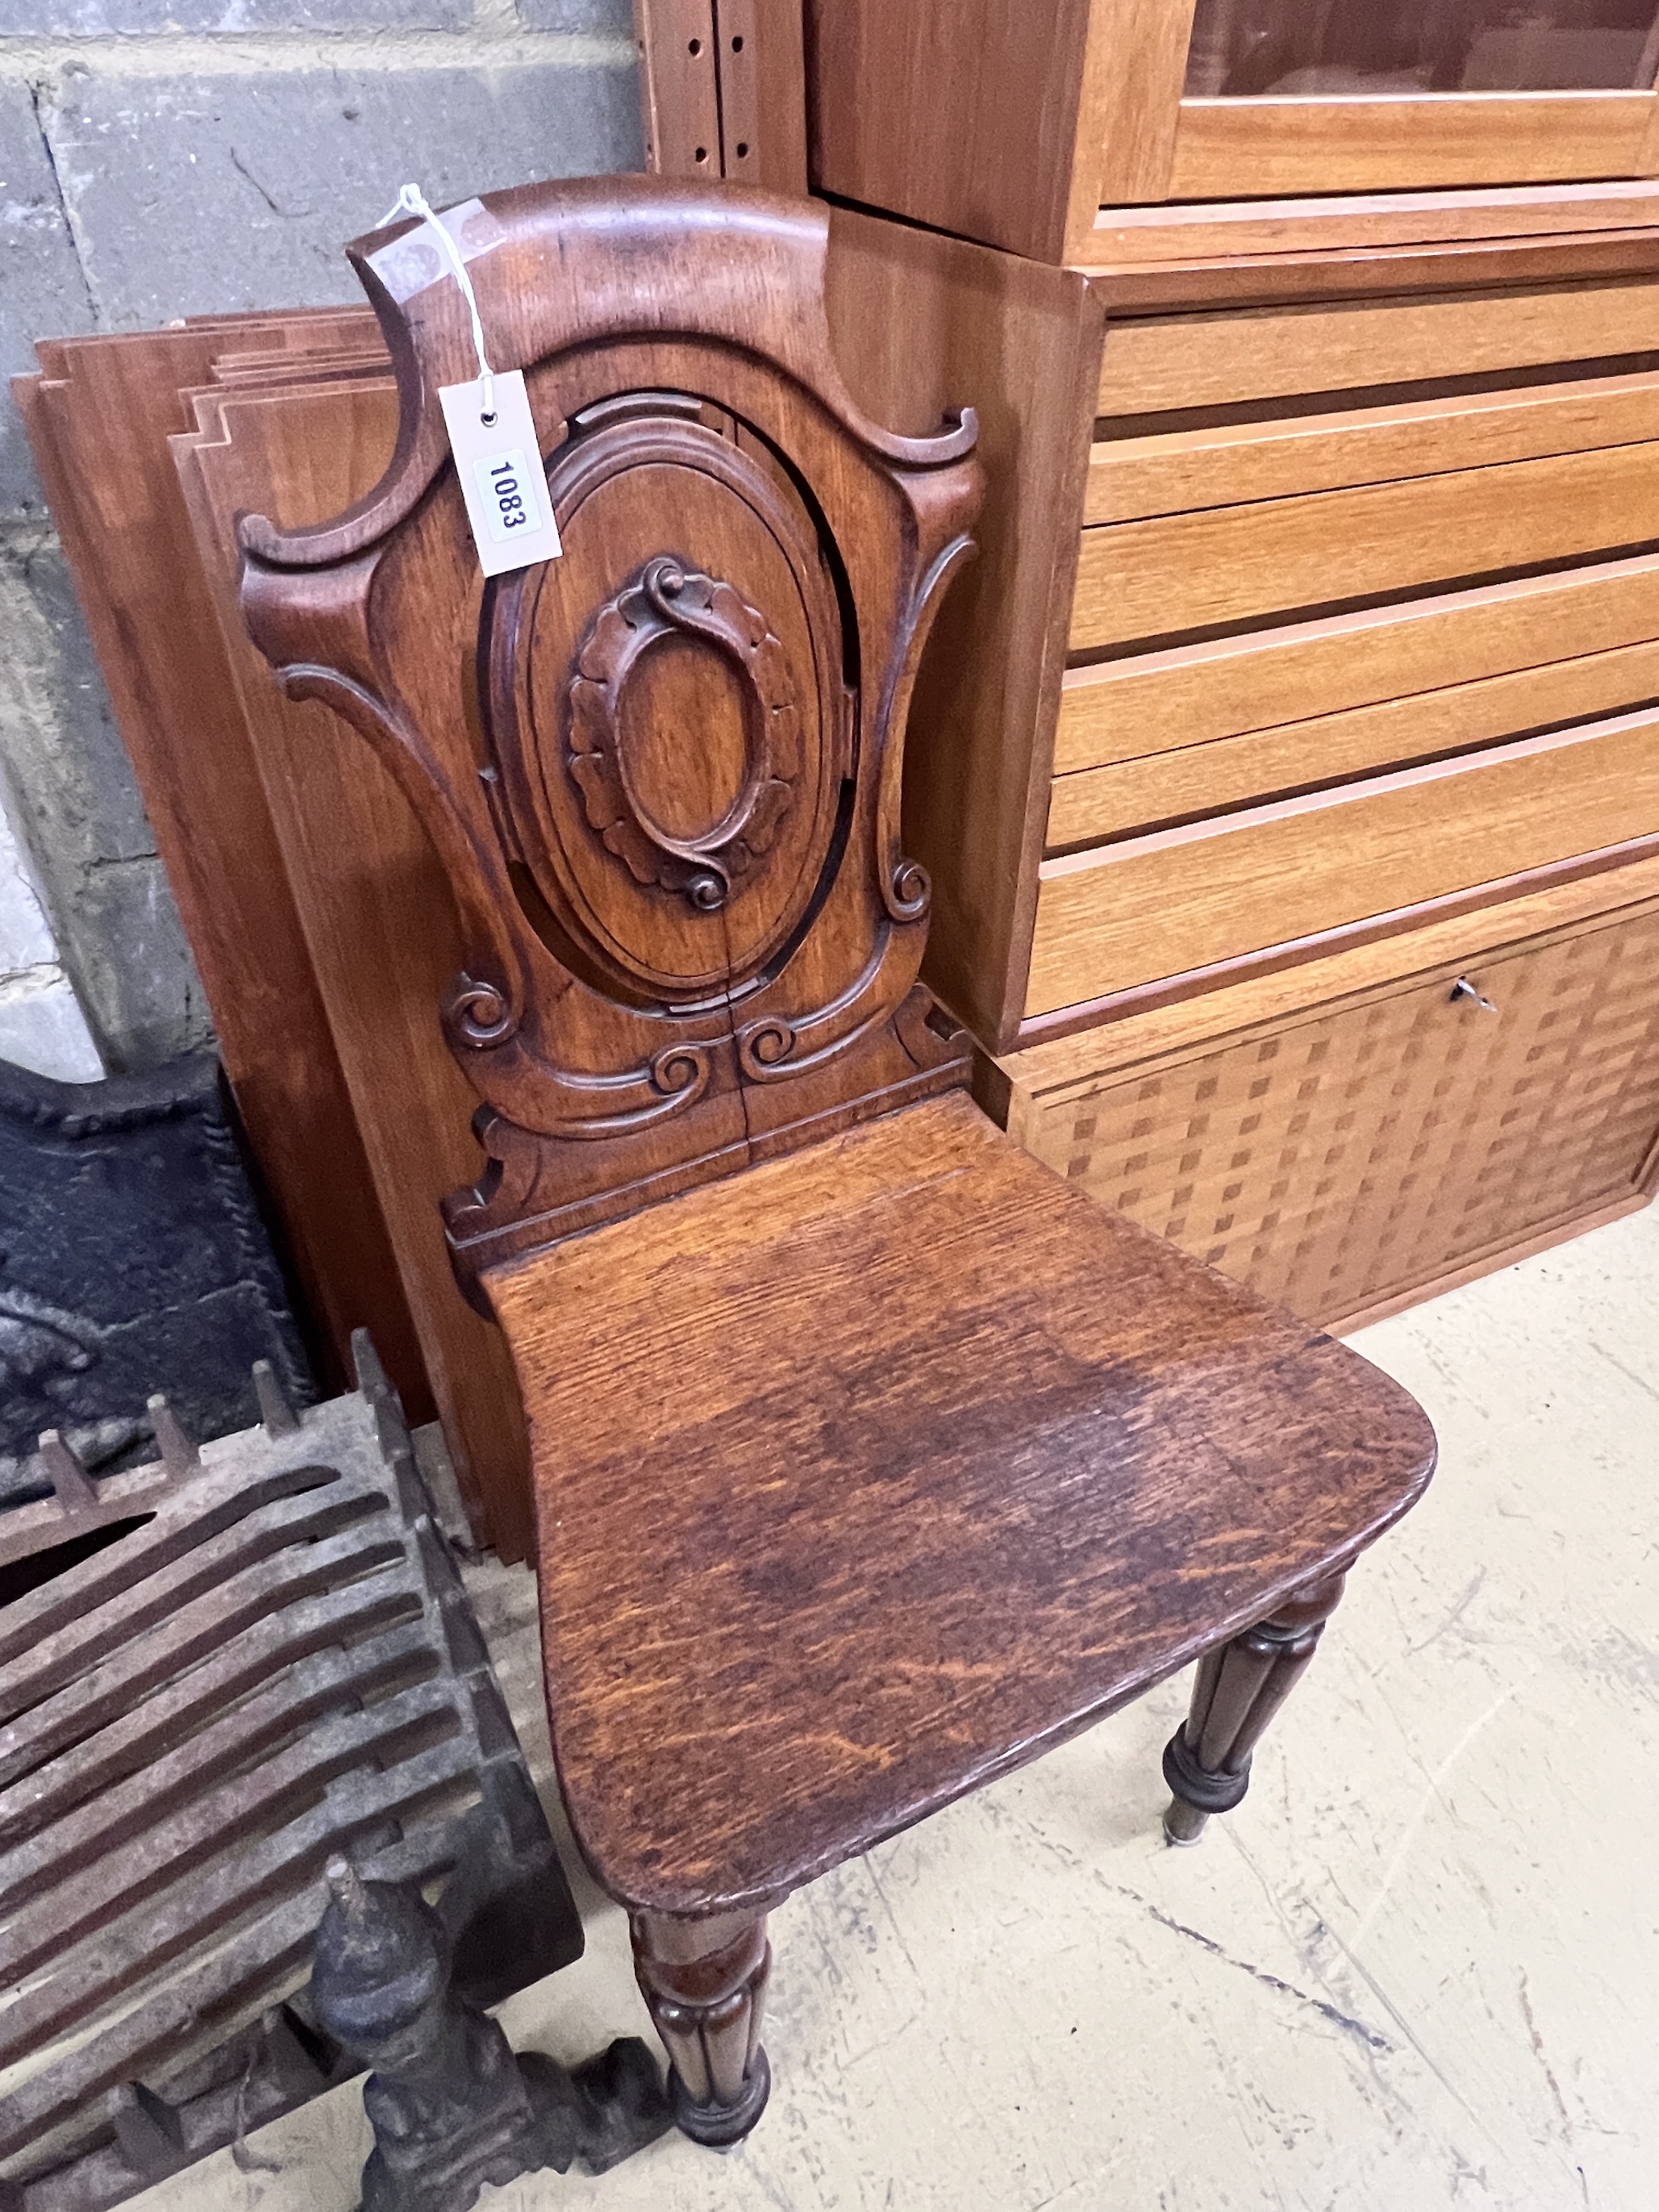 A Victorian oak hall chair